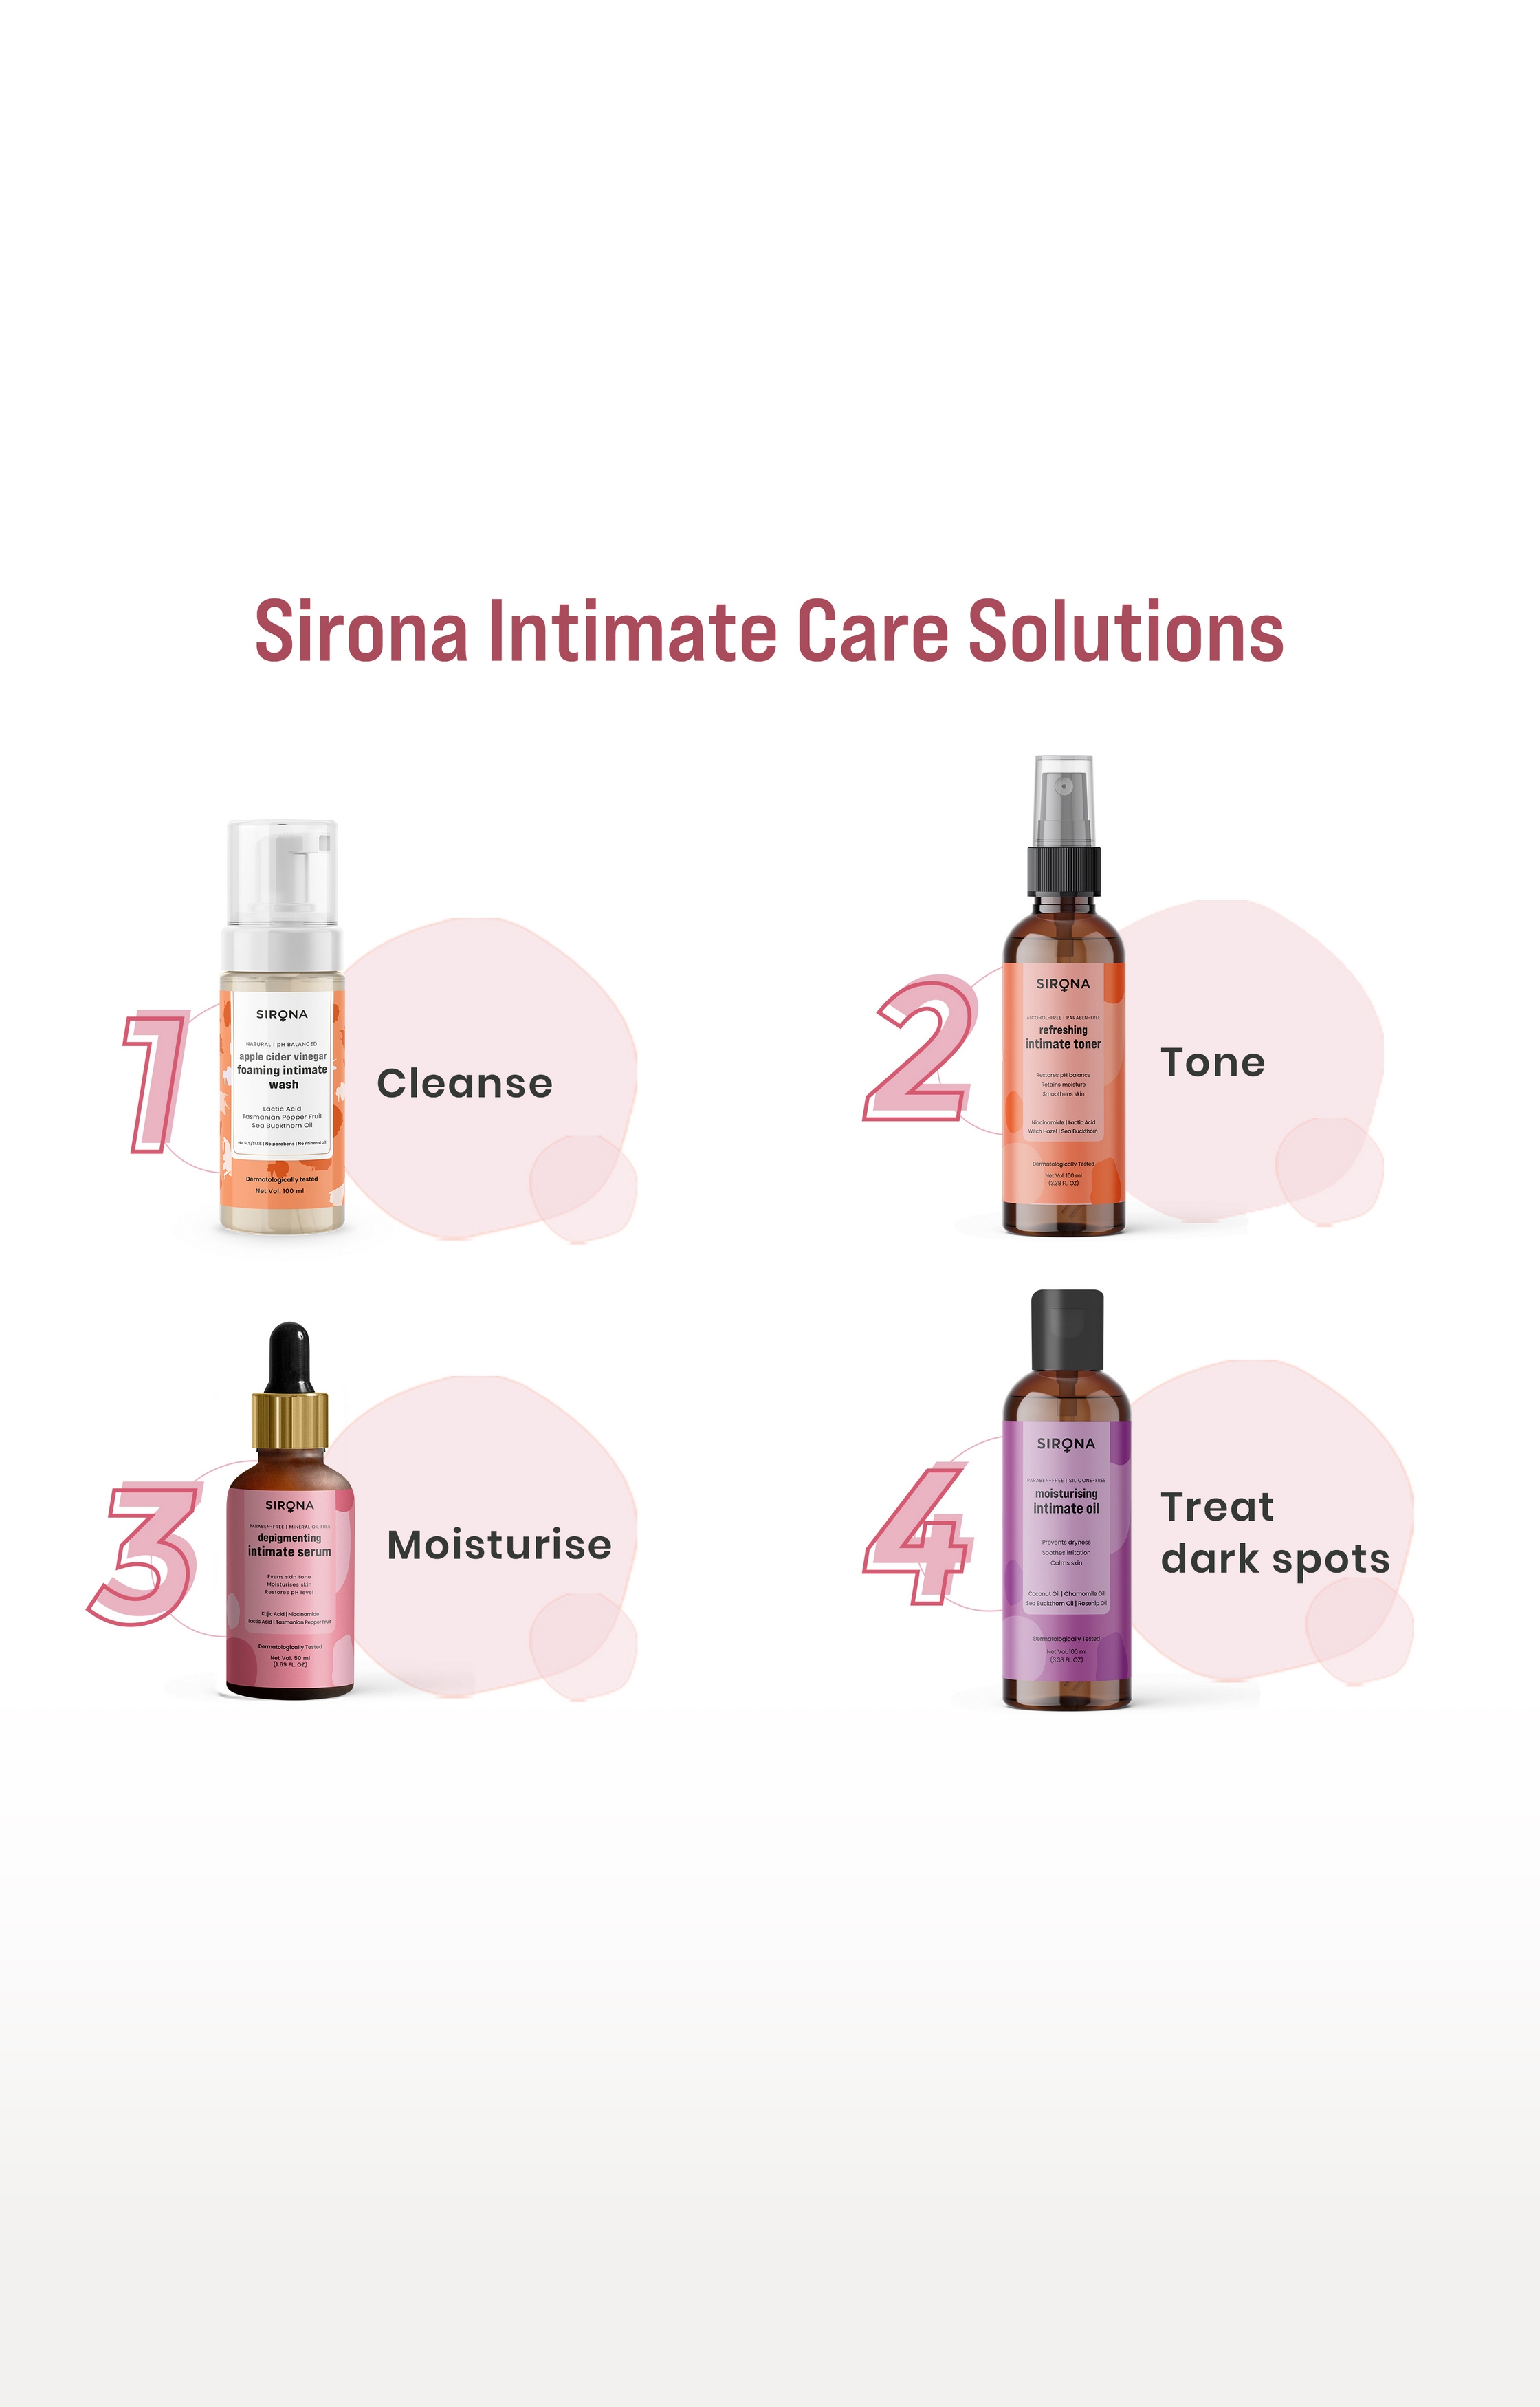 Sirona Intimate Serum - 50 Ml